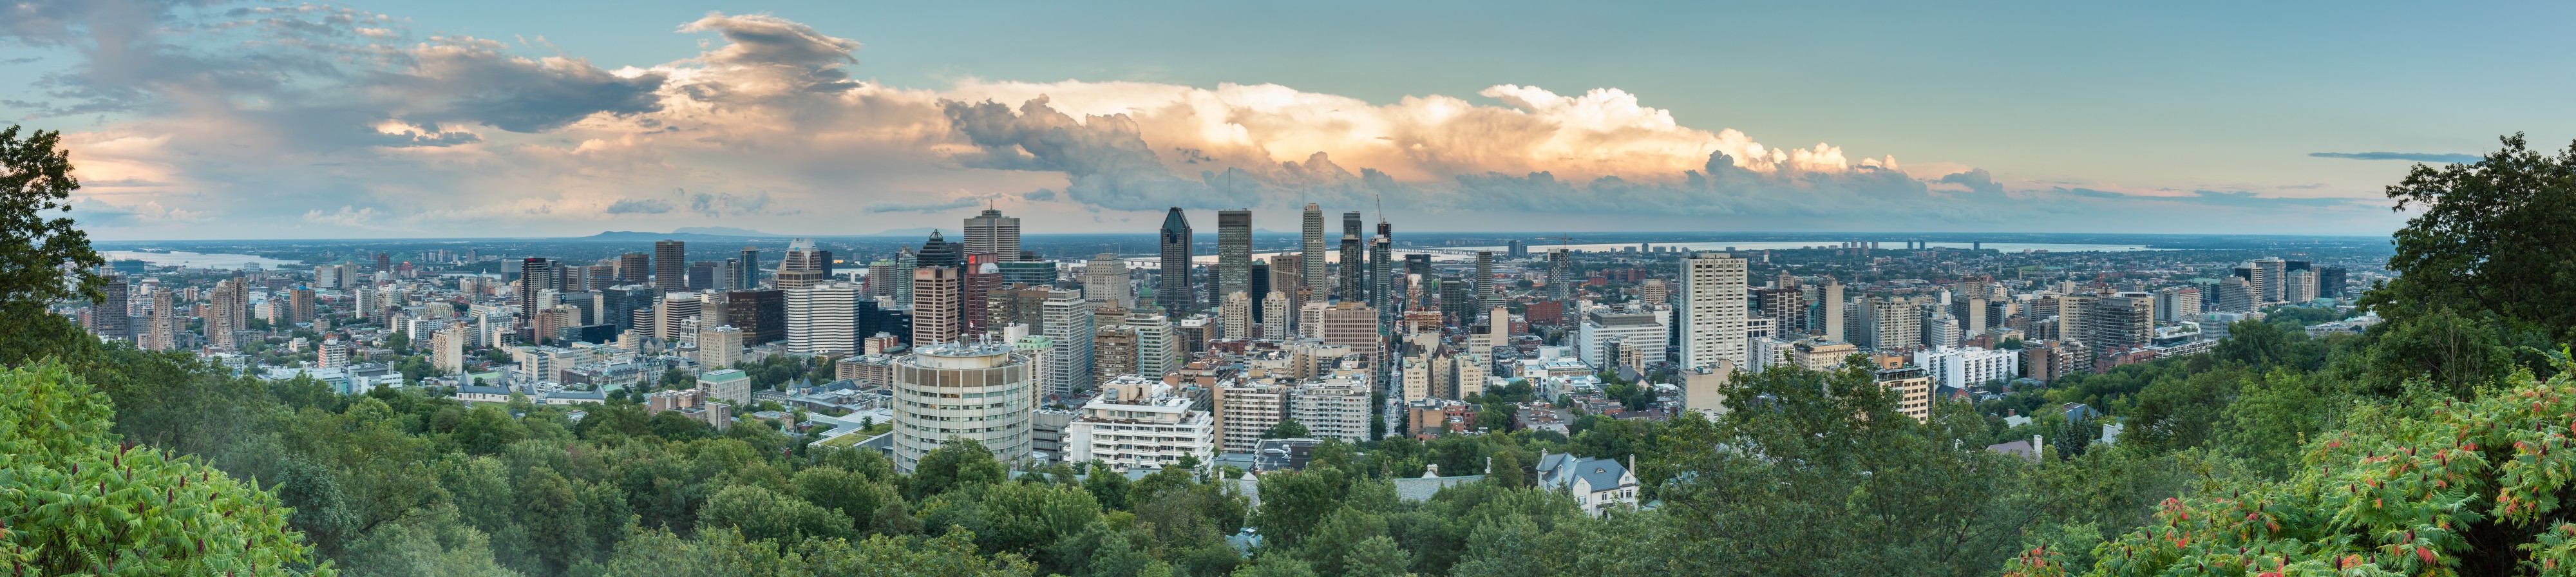 Vista de Montreal desde el Monte Royal, Canadá, 2017-08-12, DD 70-74 PAN